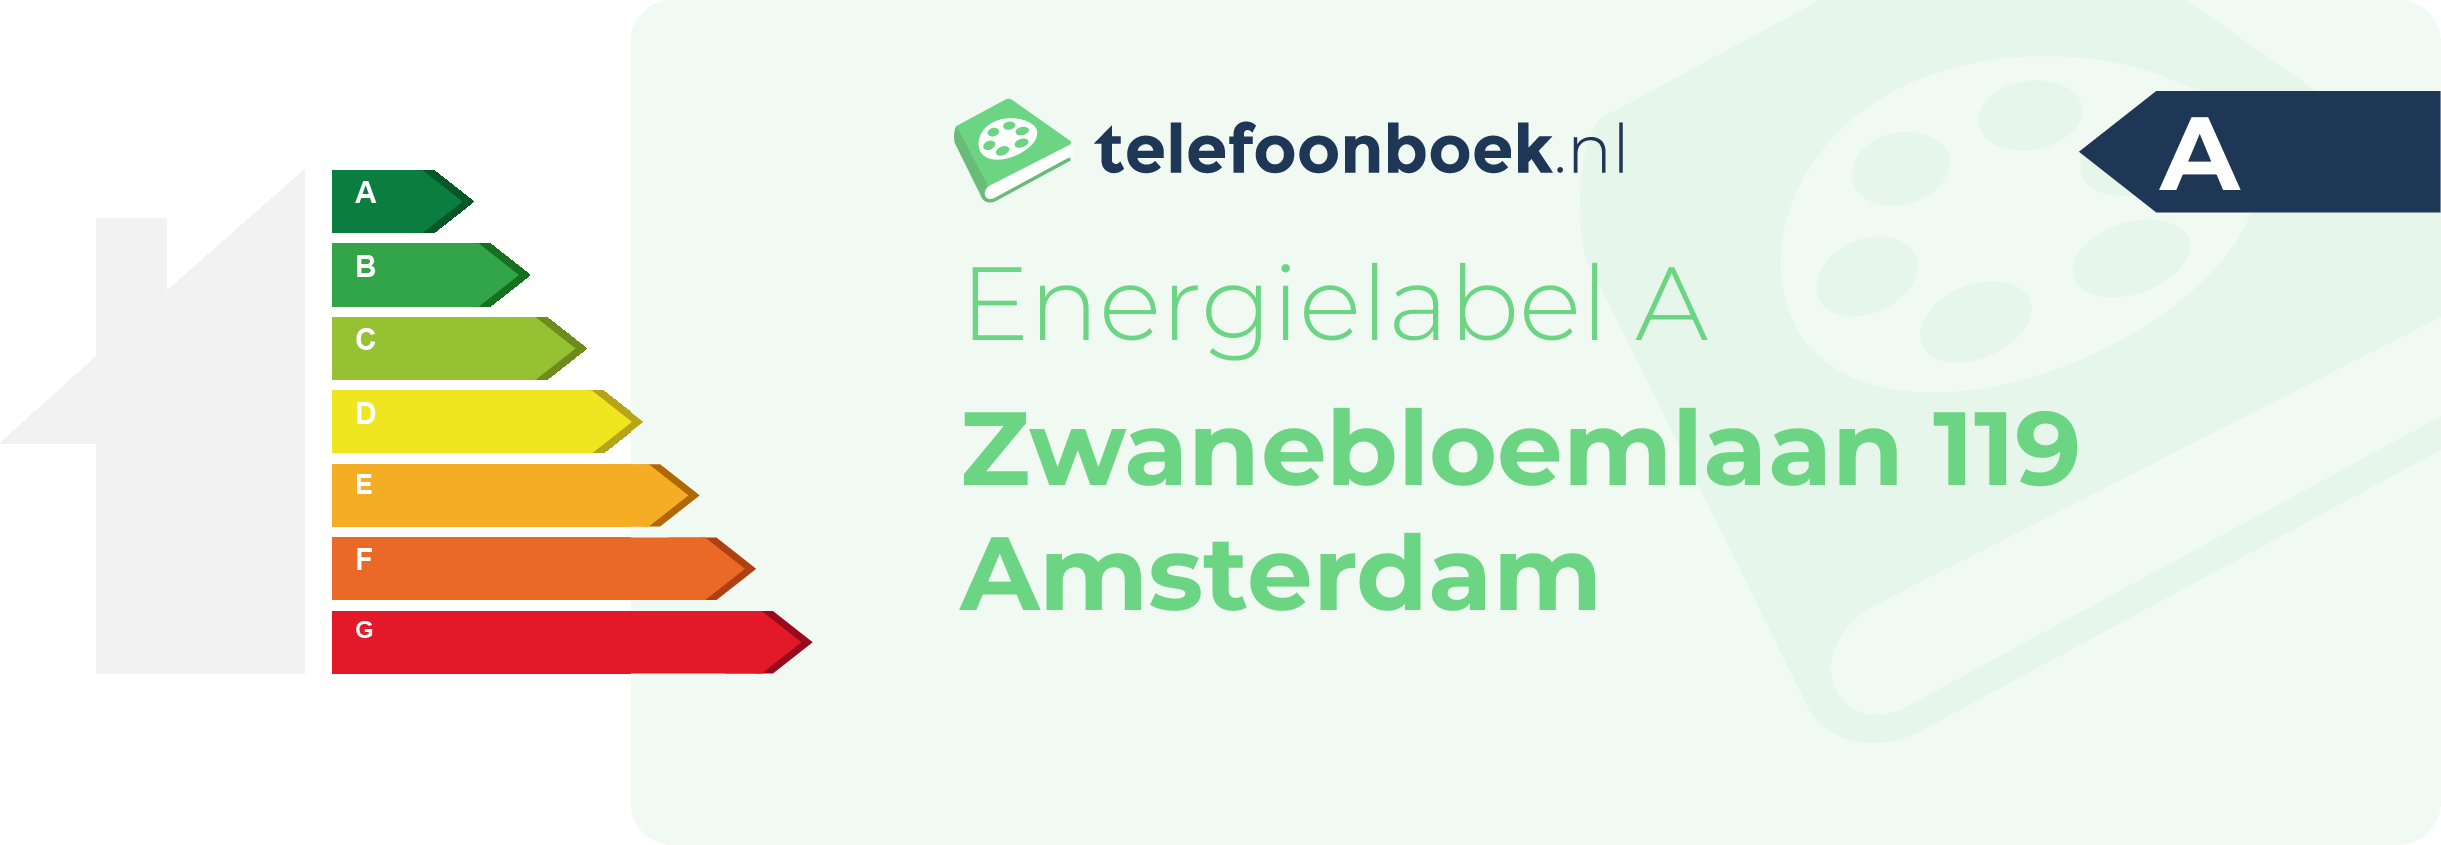 Energielabel Zwanebloemlaan 119 Amsterdam